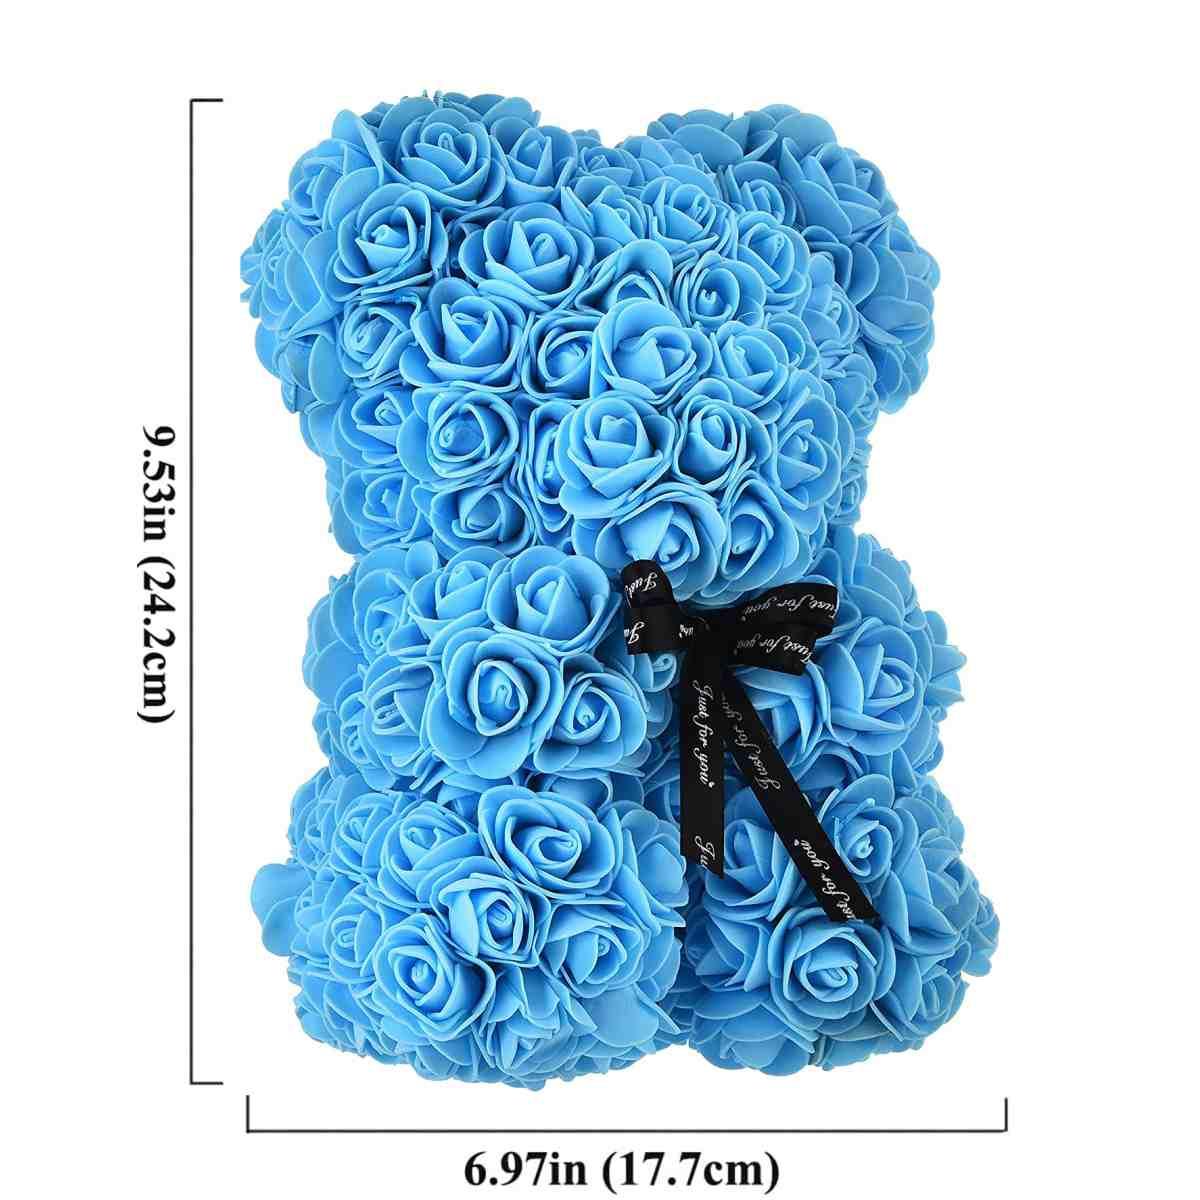 Orsetto di Rose 25 cm Con Scatola Regalo - Blu Chiaro